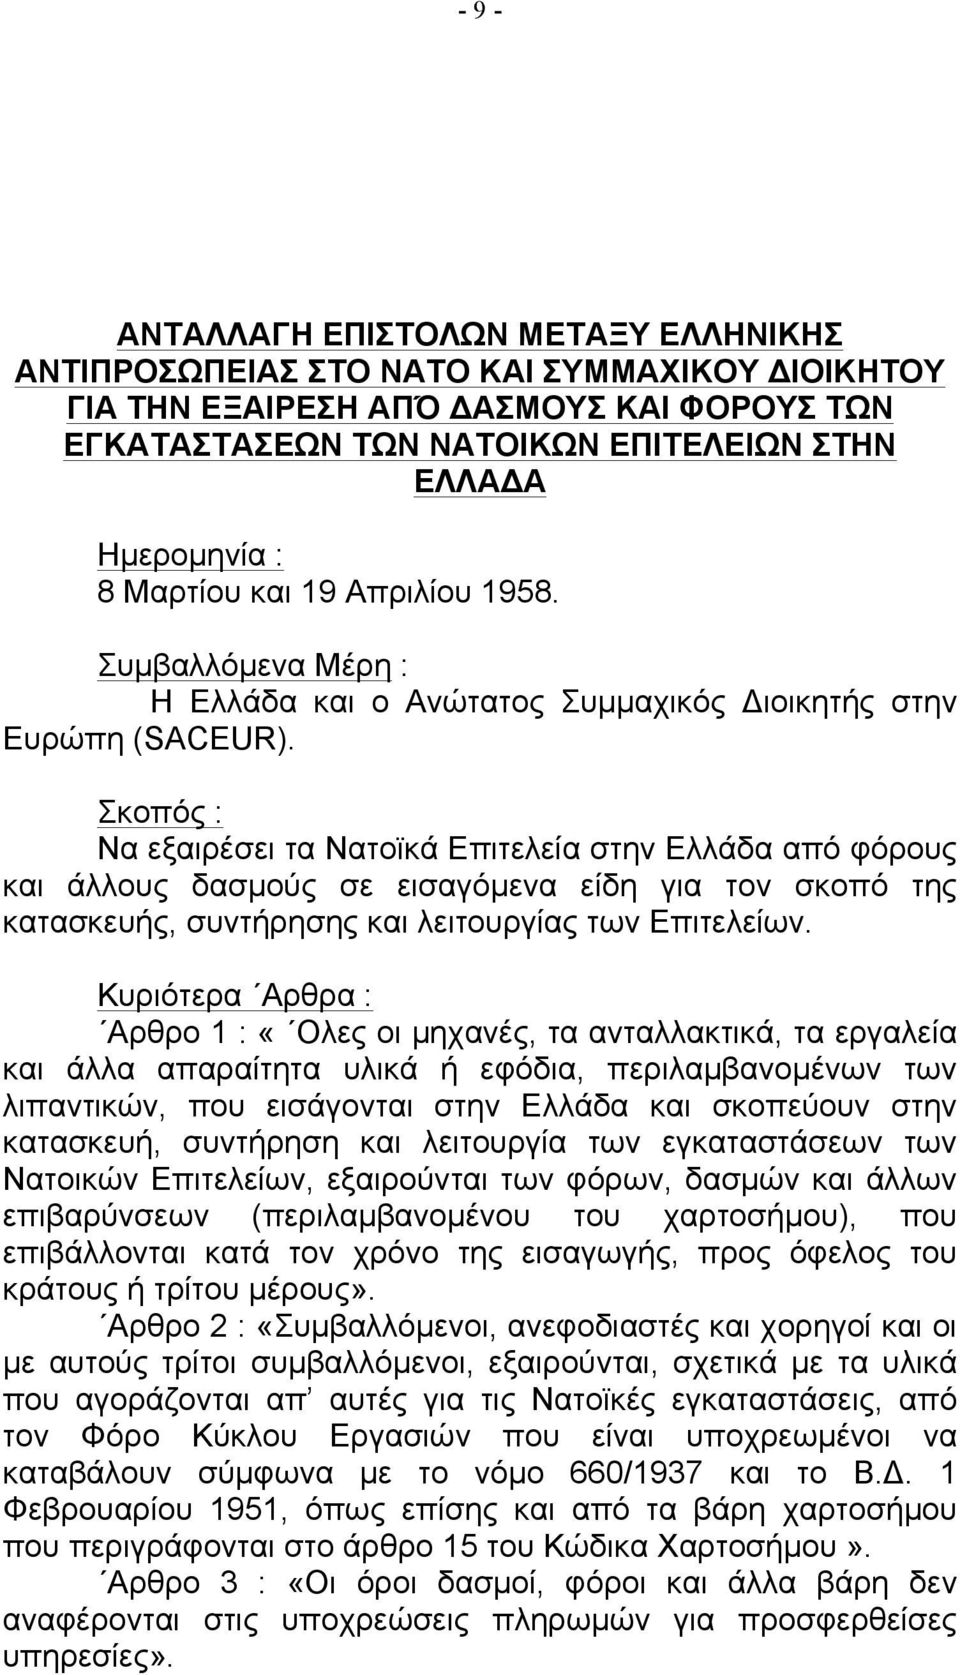 Σκοπός : Να εξαιρέσει τα Νατοϊκά Επιτελεία στην Ελλάδα από φόρους και άλλους δασµούς σε εισαγόµενα είδη για τον σκοπό της κατασκευής, συντήρησης και λειτουργίας των Επιτελείων.